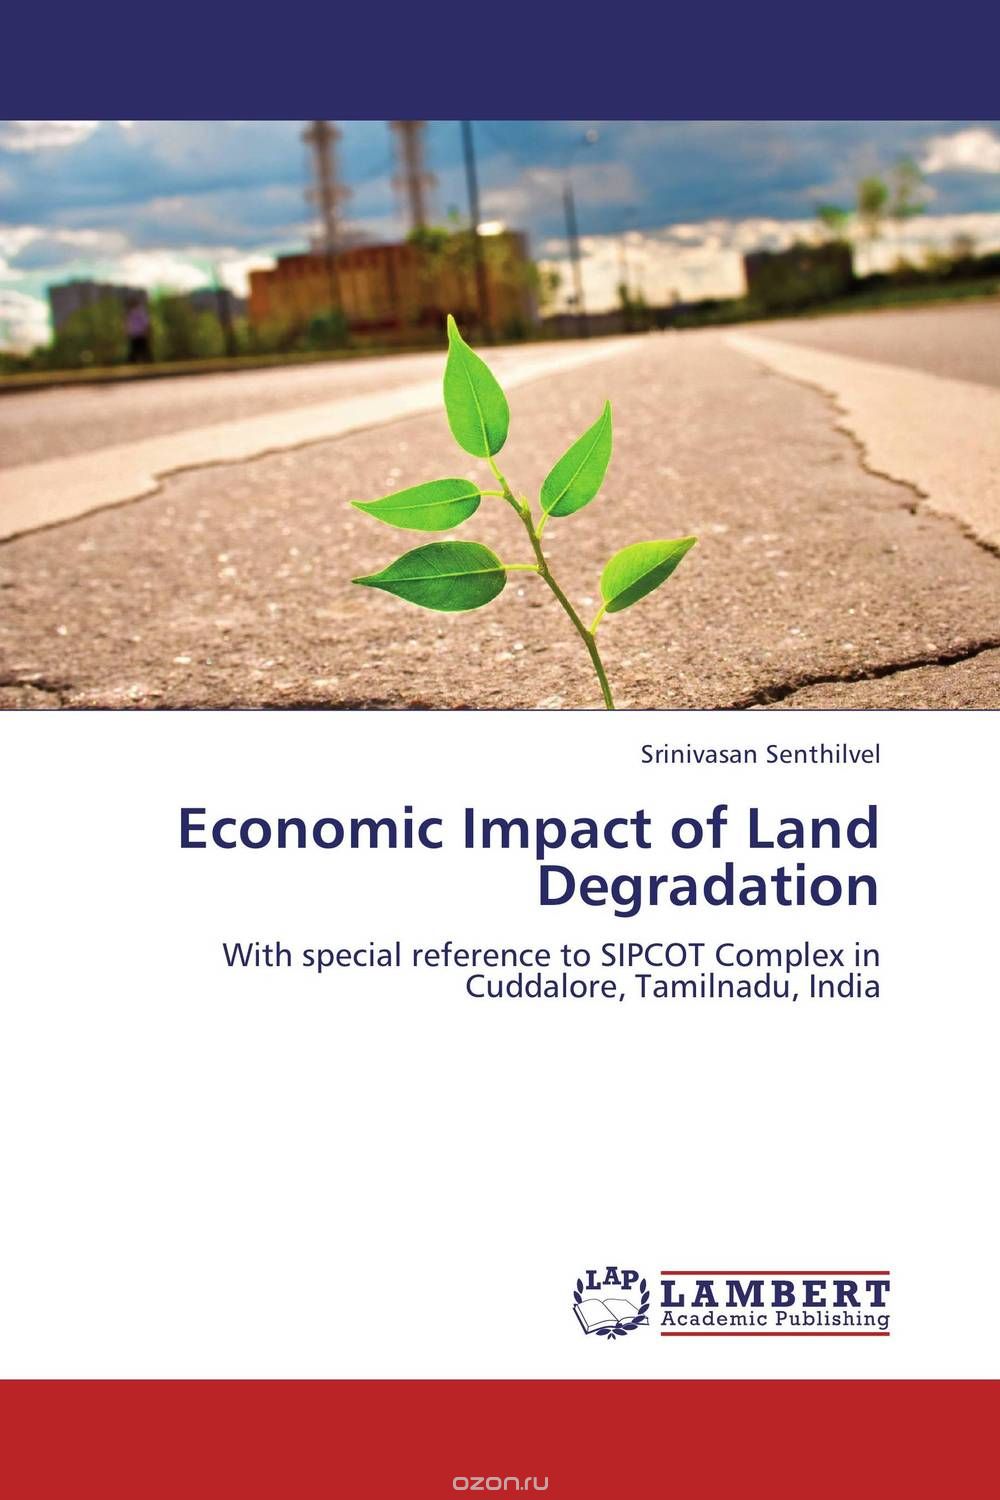 Скачать книгу "Economic Impact of Land Degradation"